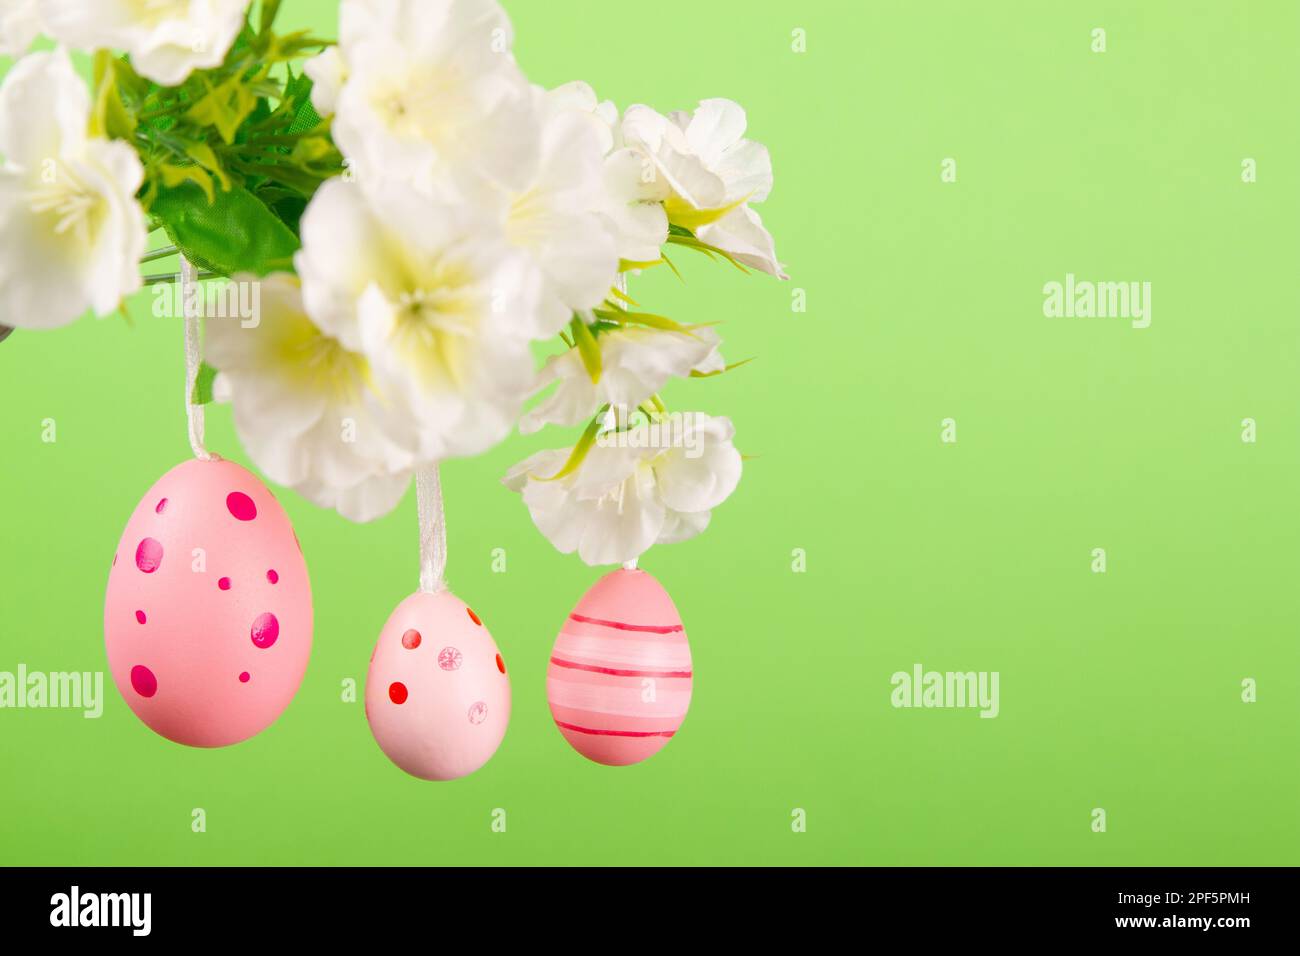 Capturez l'essence de Pâques avec cette image pittoresque de trois œufs roses suspendus d'une branche délicate en pleine fleur, contrastant avec la lumière g. Banque D'Images